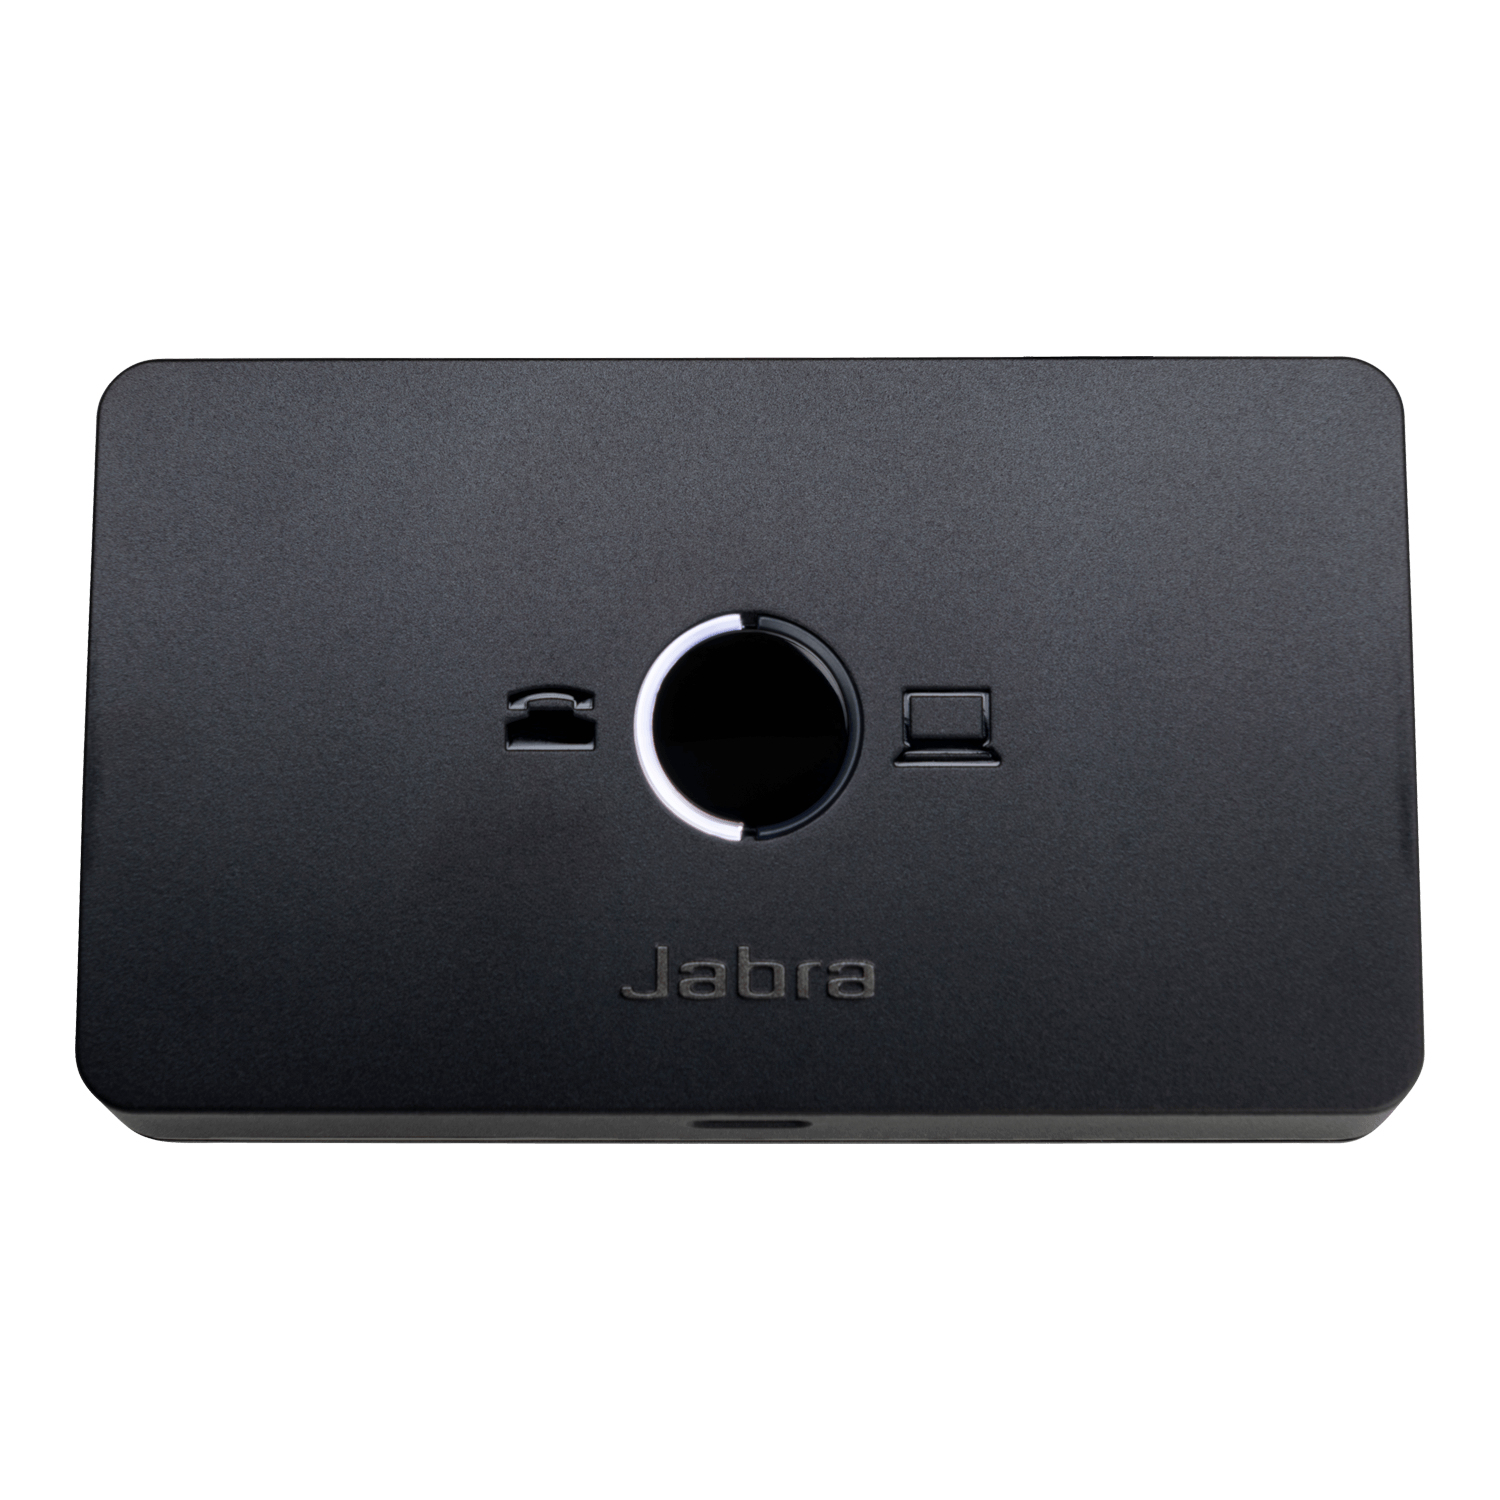 JABRA Link 950 USB-C